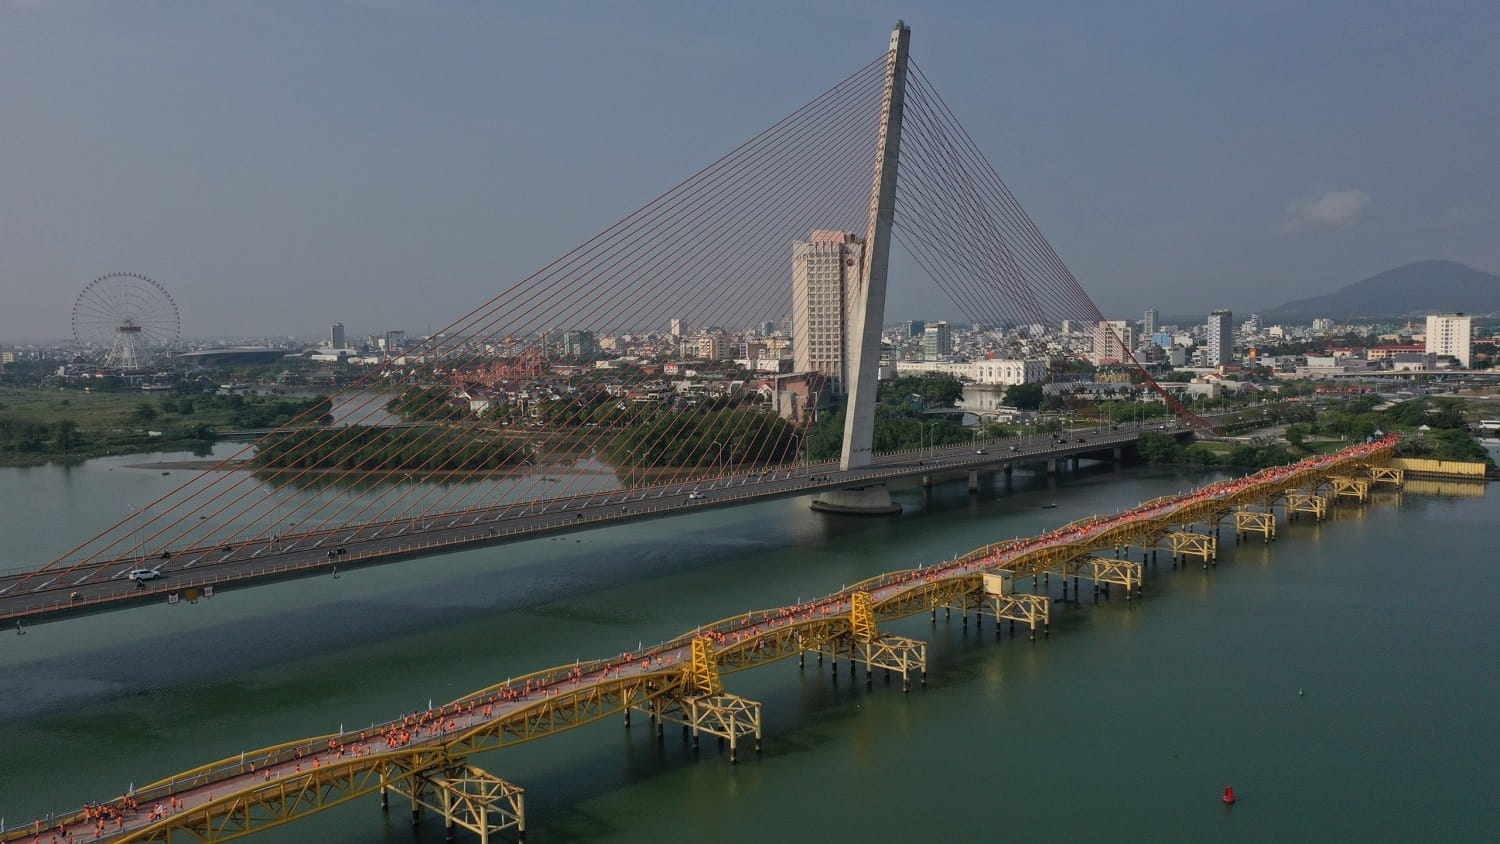 Runner đã trải nghiệm cung đường chạy tuyệt đẹp qua cầu đi bộ Nguyễn Văn Trỗi - cây cầu lâu đời nhất nối đôi bờ sông Hàn